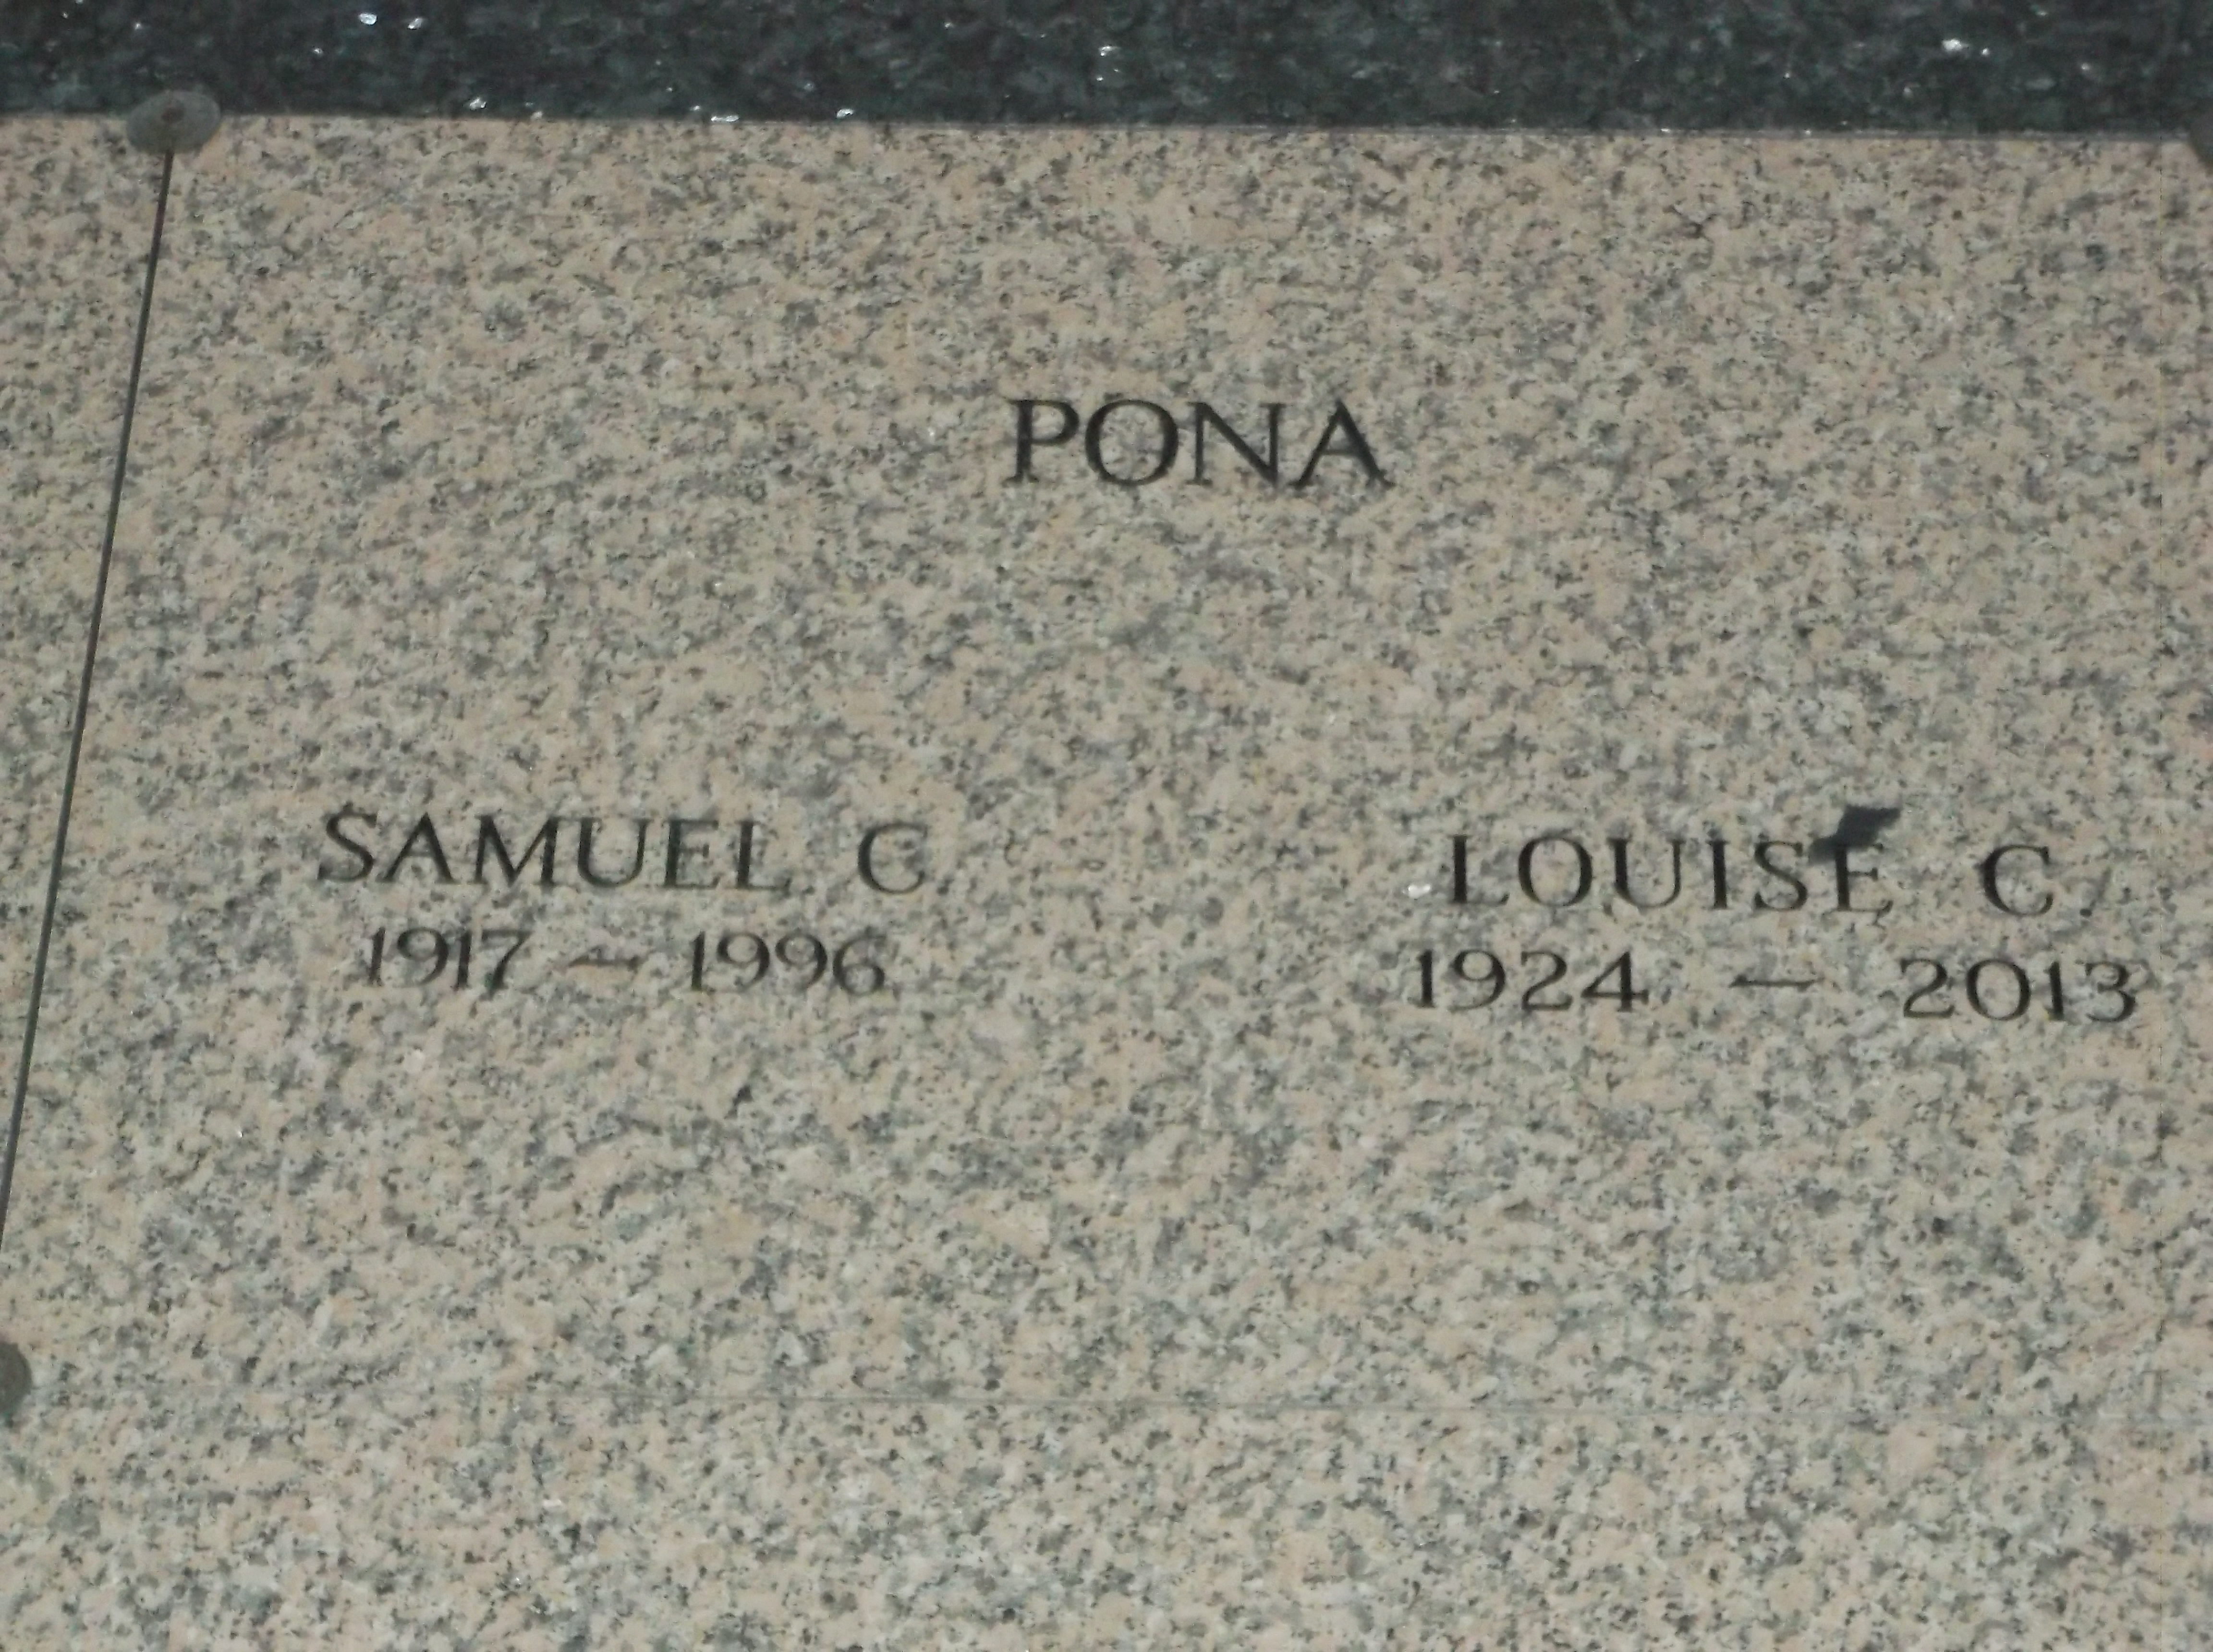 Samuel C Pona